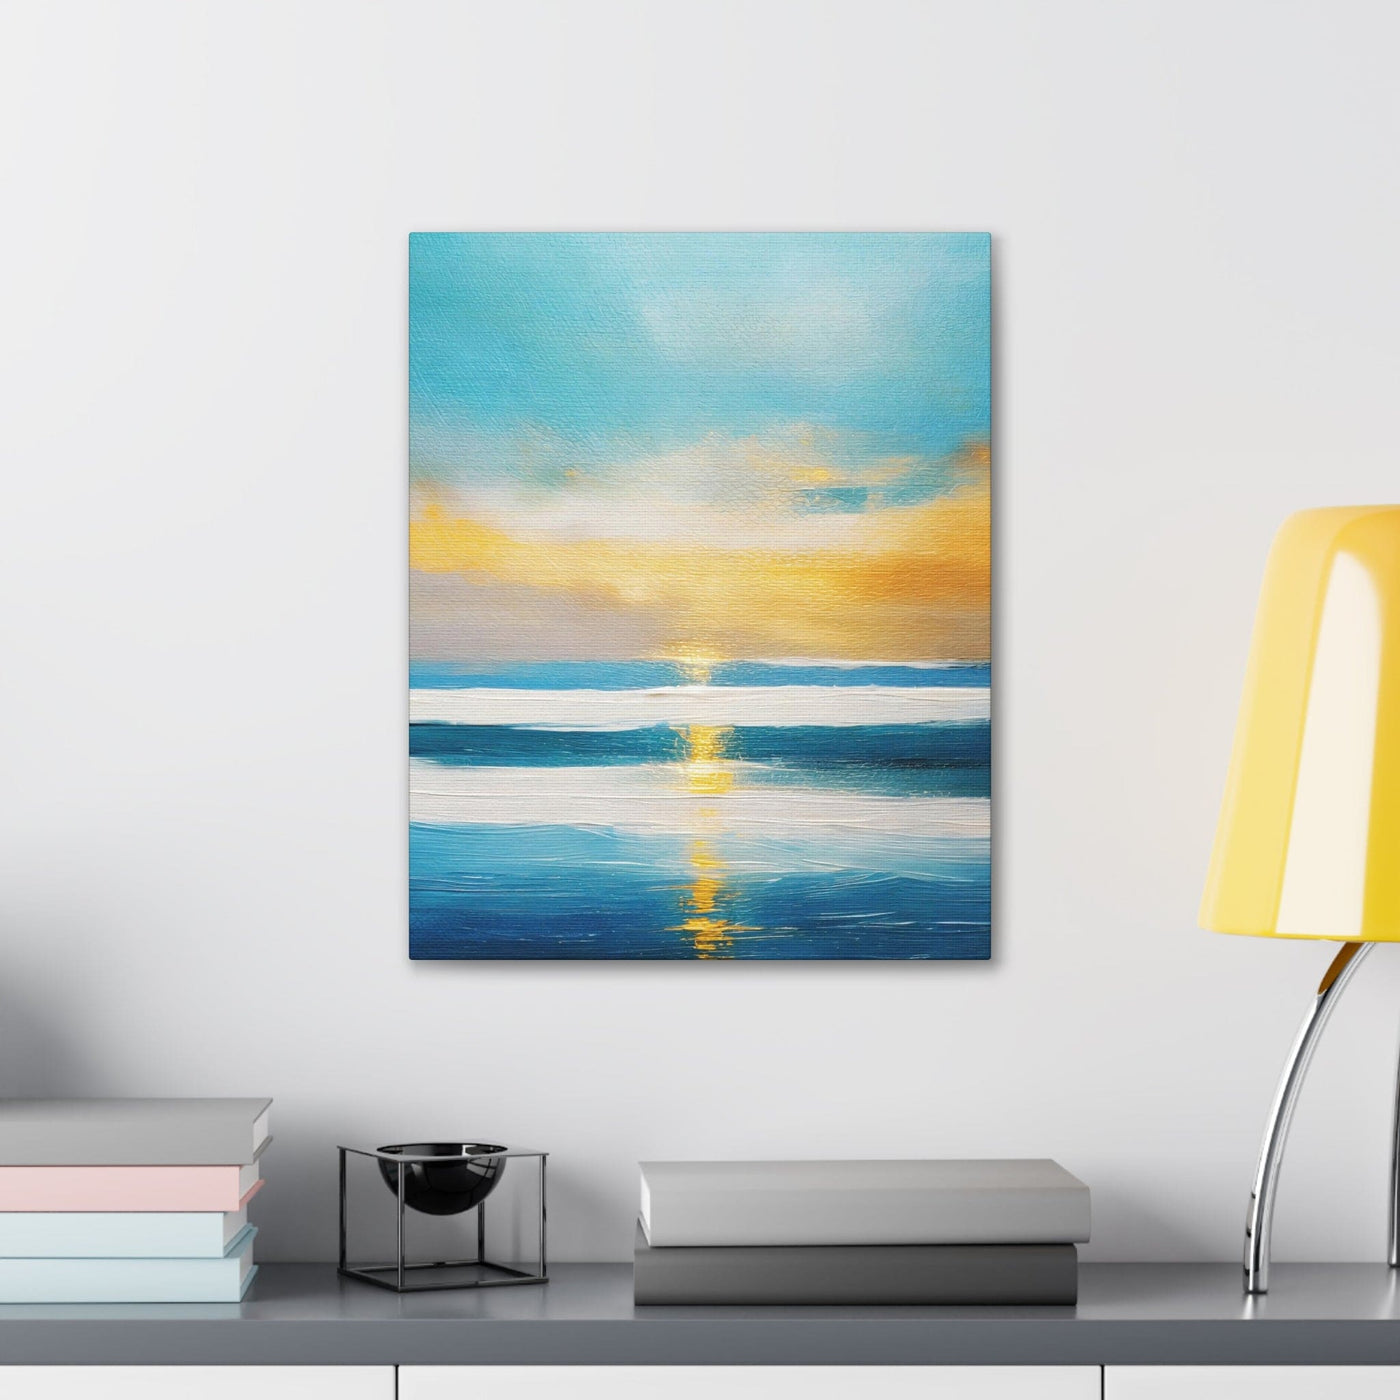 Wall Art Decor Canvas Print Artwork Blue Ocean Golden Sunset - Canvas